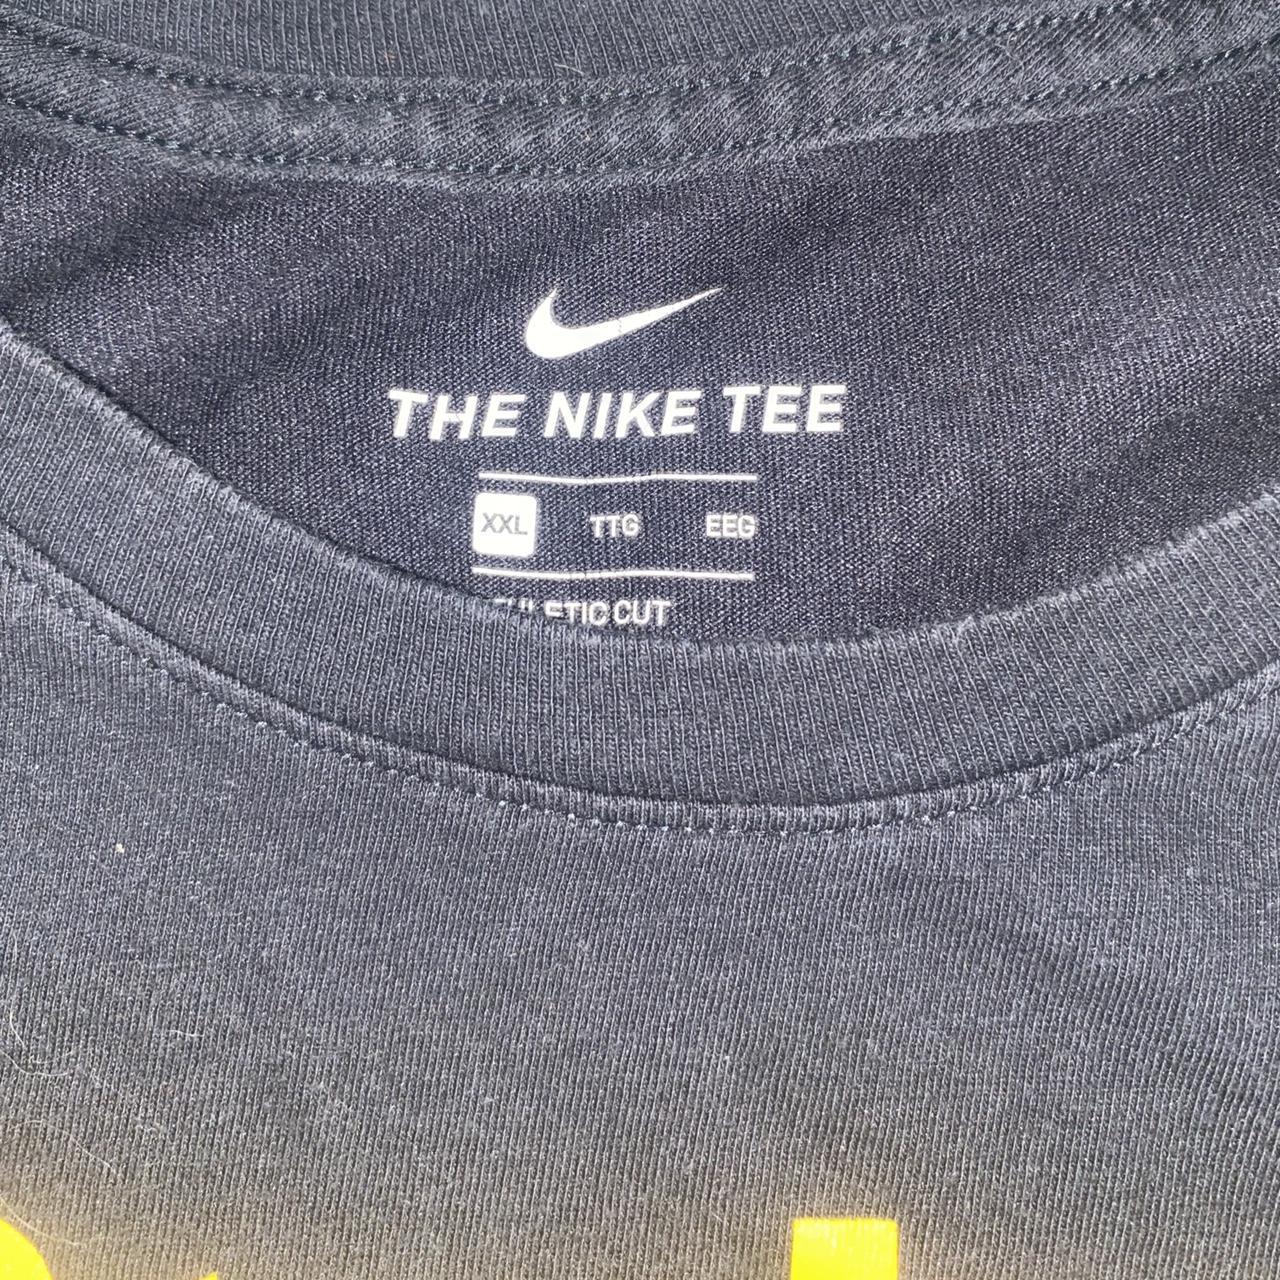 Nike Nfl Antonio Brown pittsburgh steelers jersey - Depop